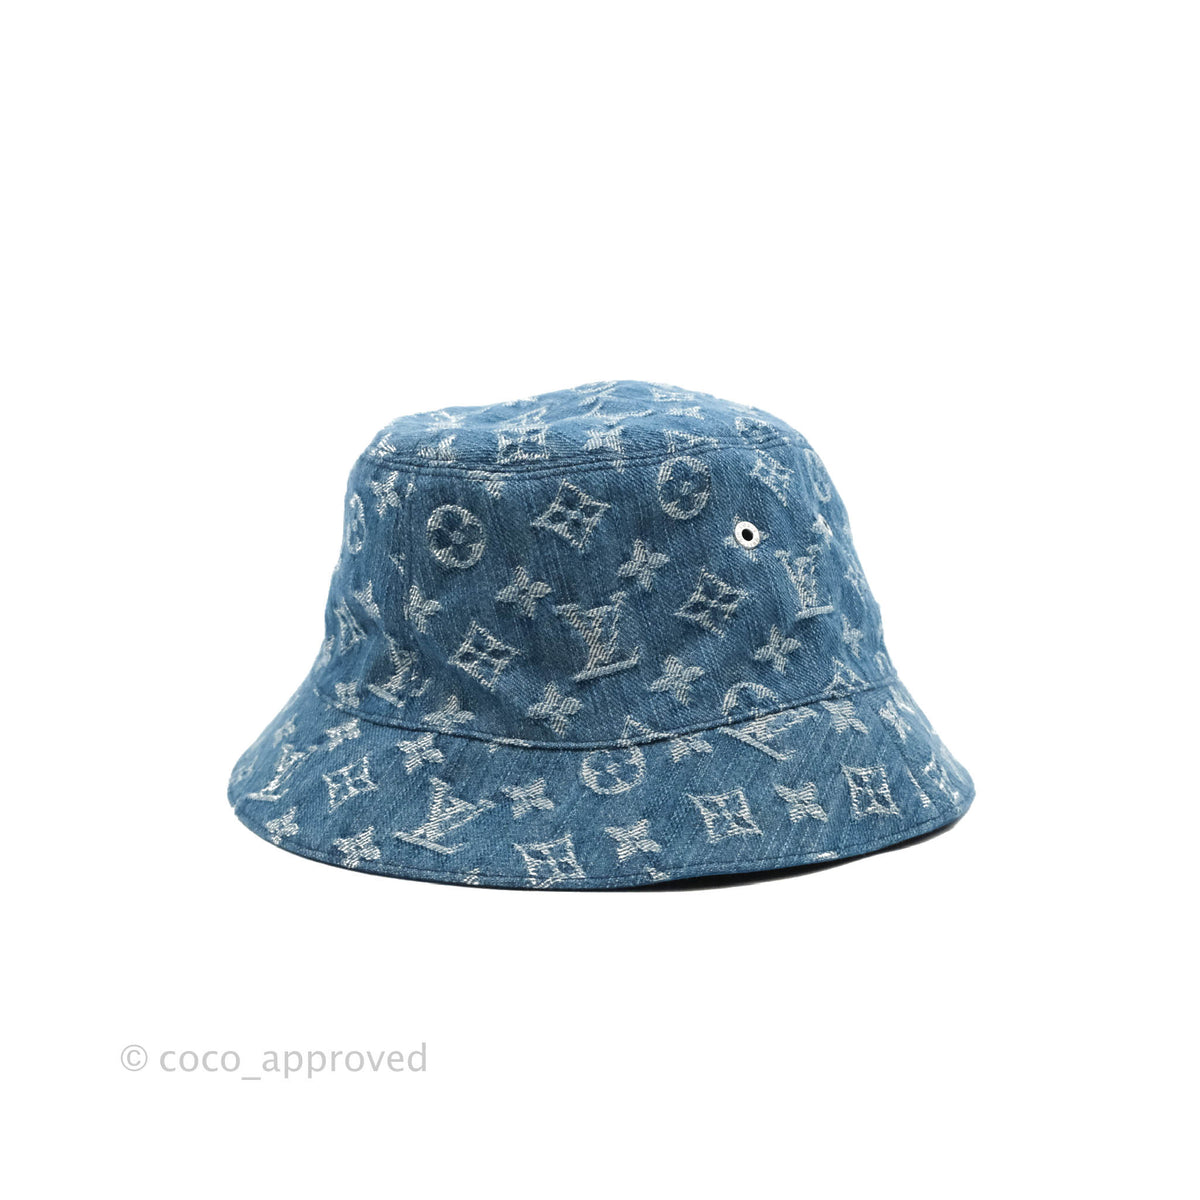 Supreme Louis Vuitton Bucket Hat